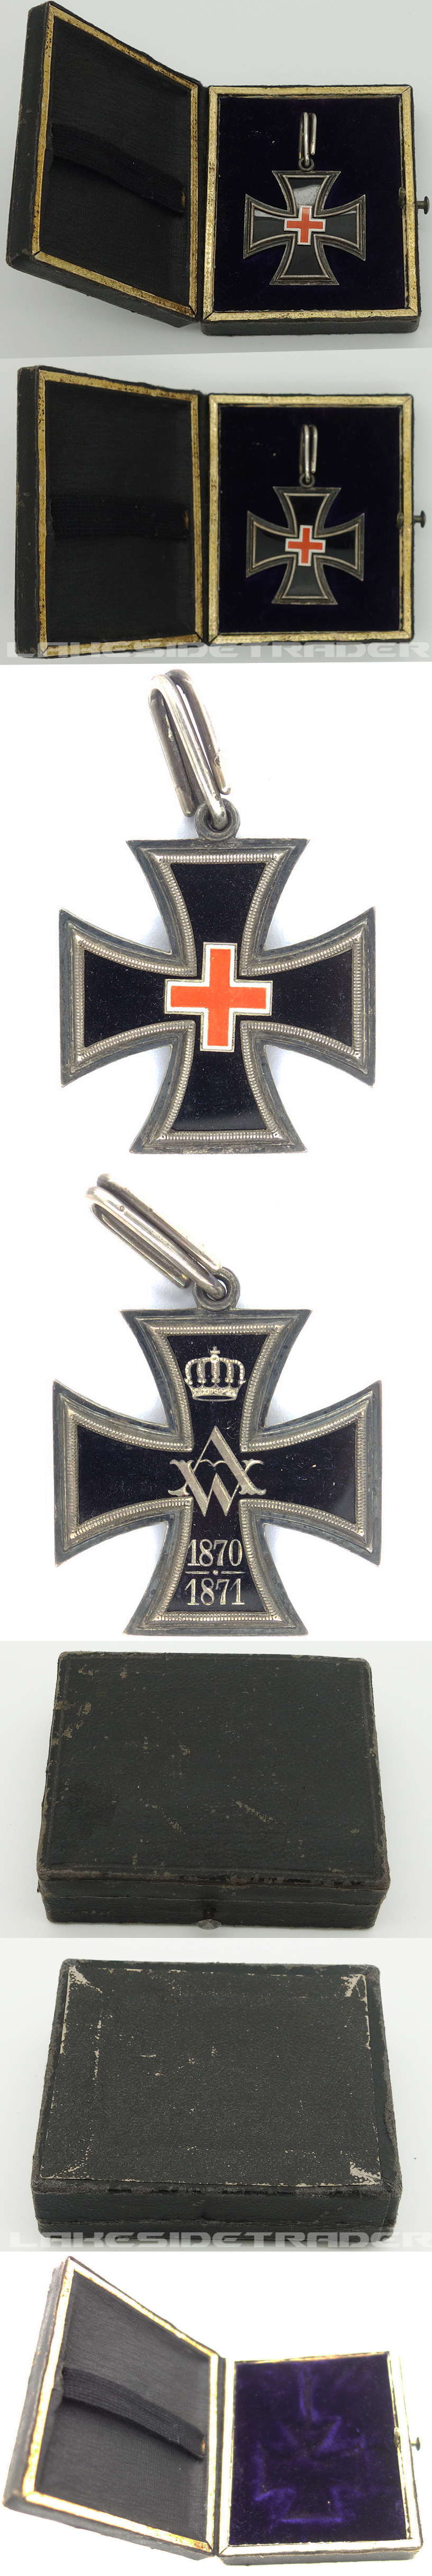 Cased 1870 Cross of Merit for Women and Girls